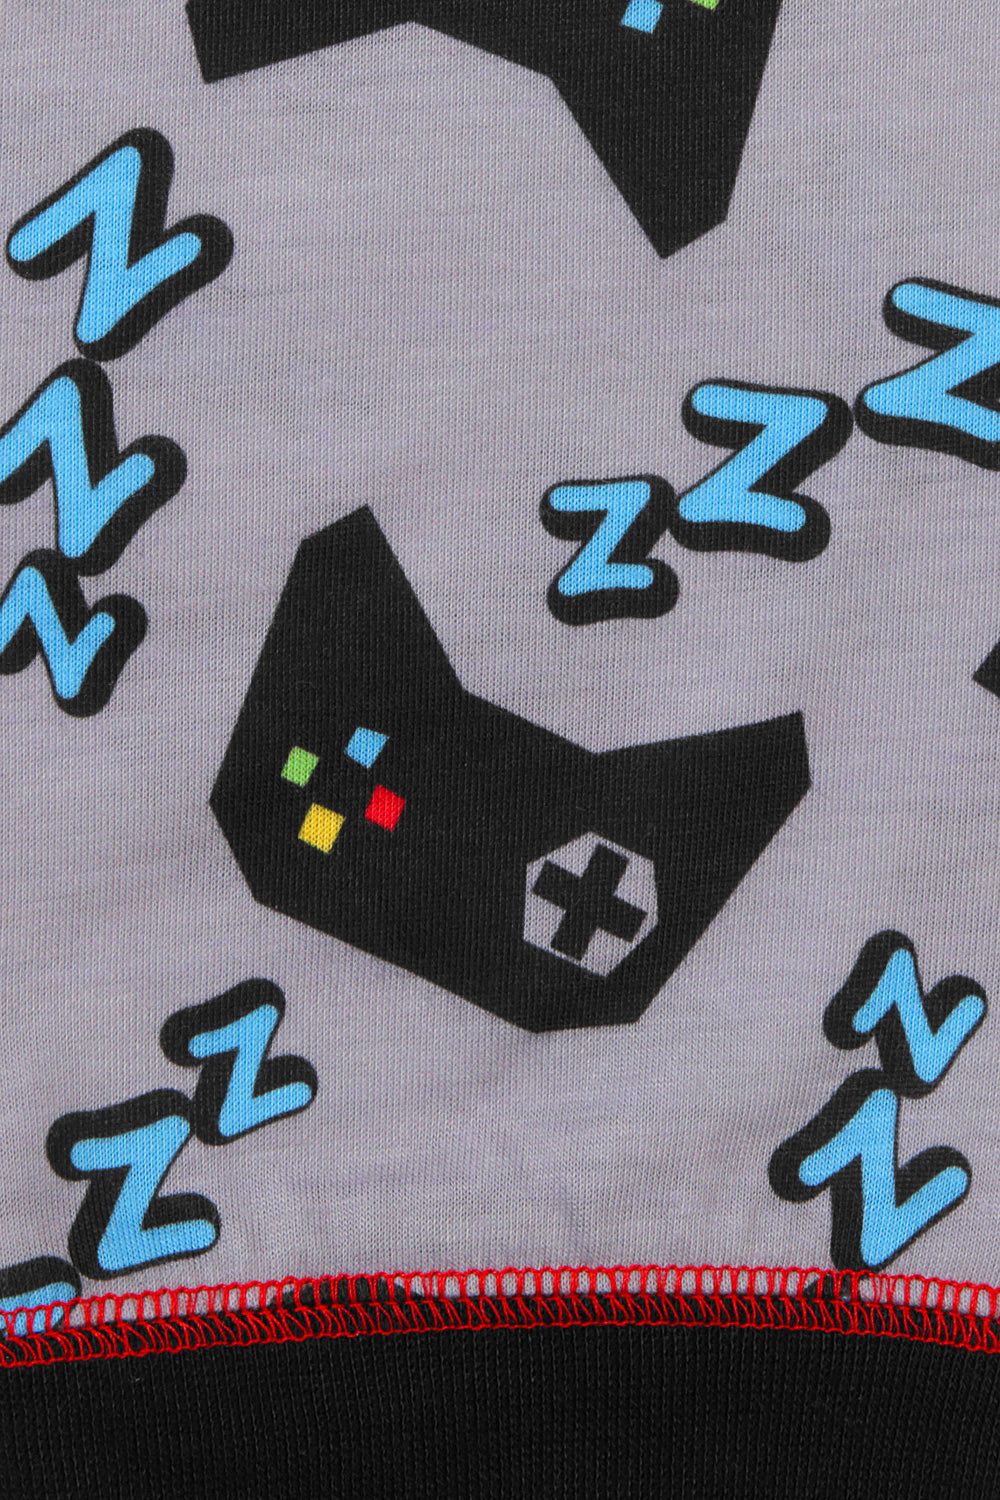 Boys Eat Game Sleep Repeat Long Gaming Pajamas - Pyjamas.com